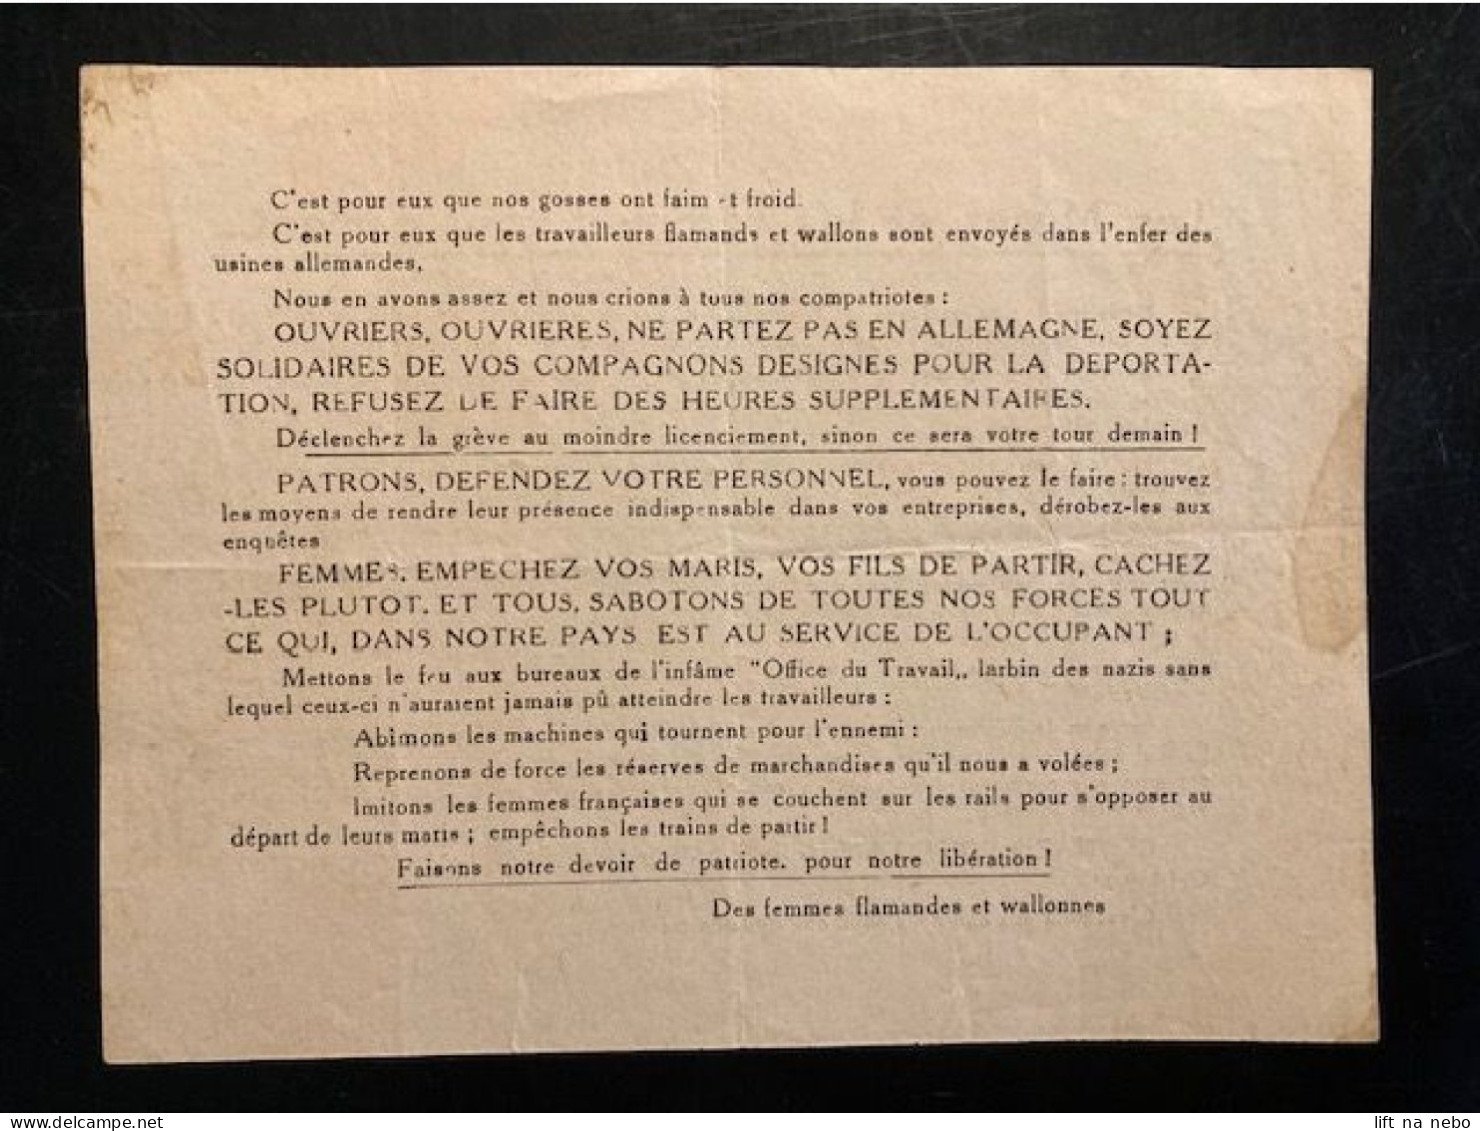 Tract Presse Clandestine Résistance Belge WWII WW2 'Les Mères Et Le Femmes Vous Parlent...' - Dokumente